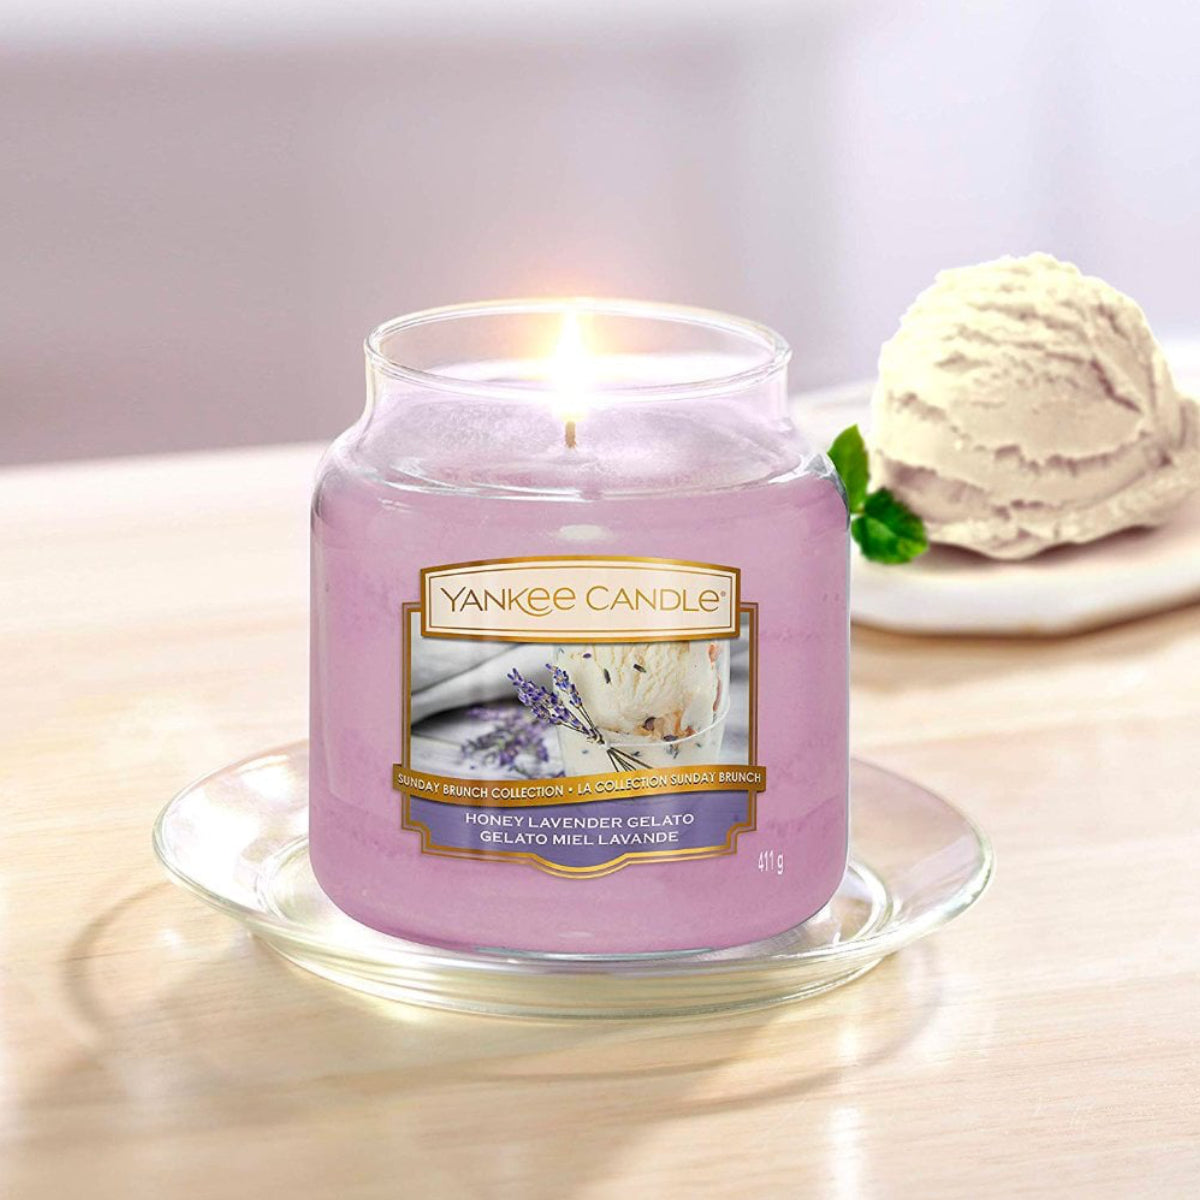 Jarro Vela com a fragrância Honey Lavender Gelato da marca Yankee Candle